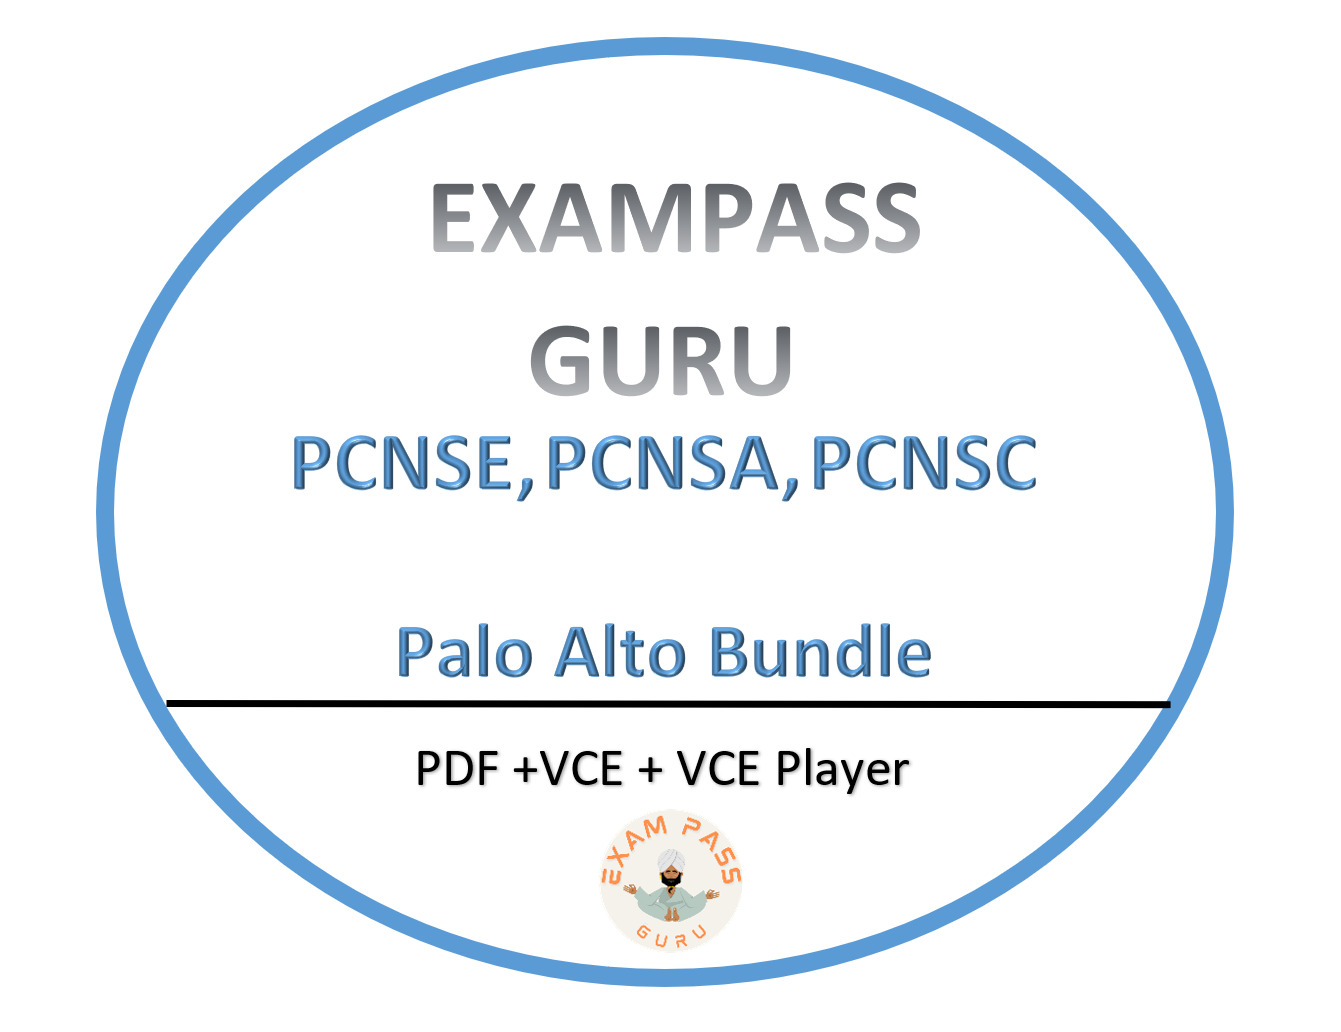 PCNSE, PCNSA, PCNSC exam bundle, APRIL updatedFree updates